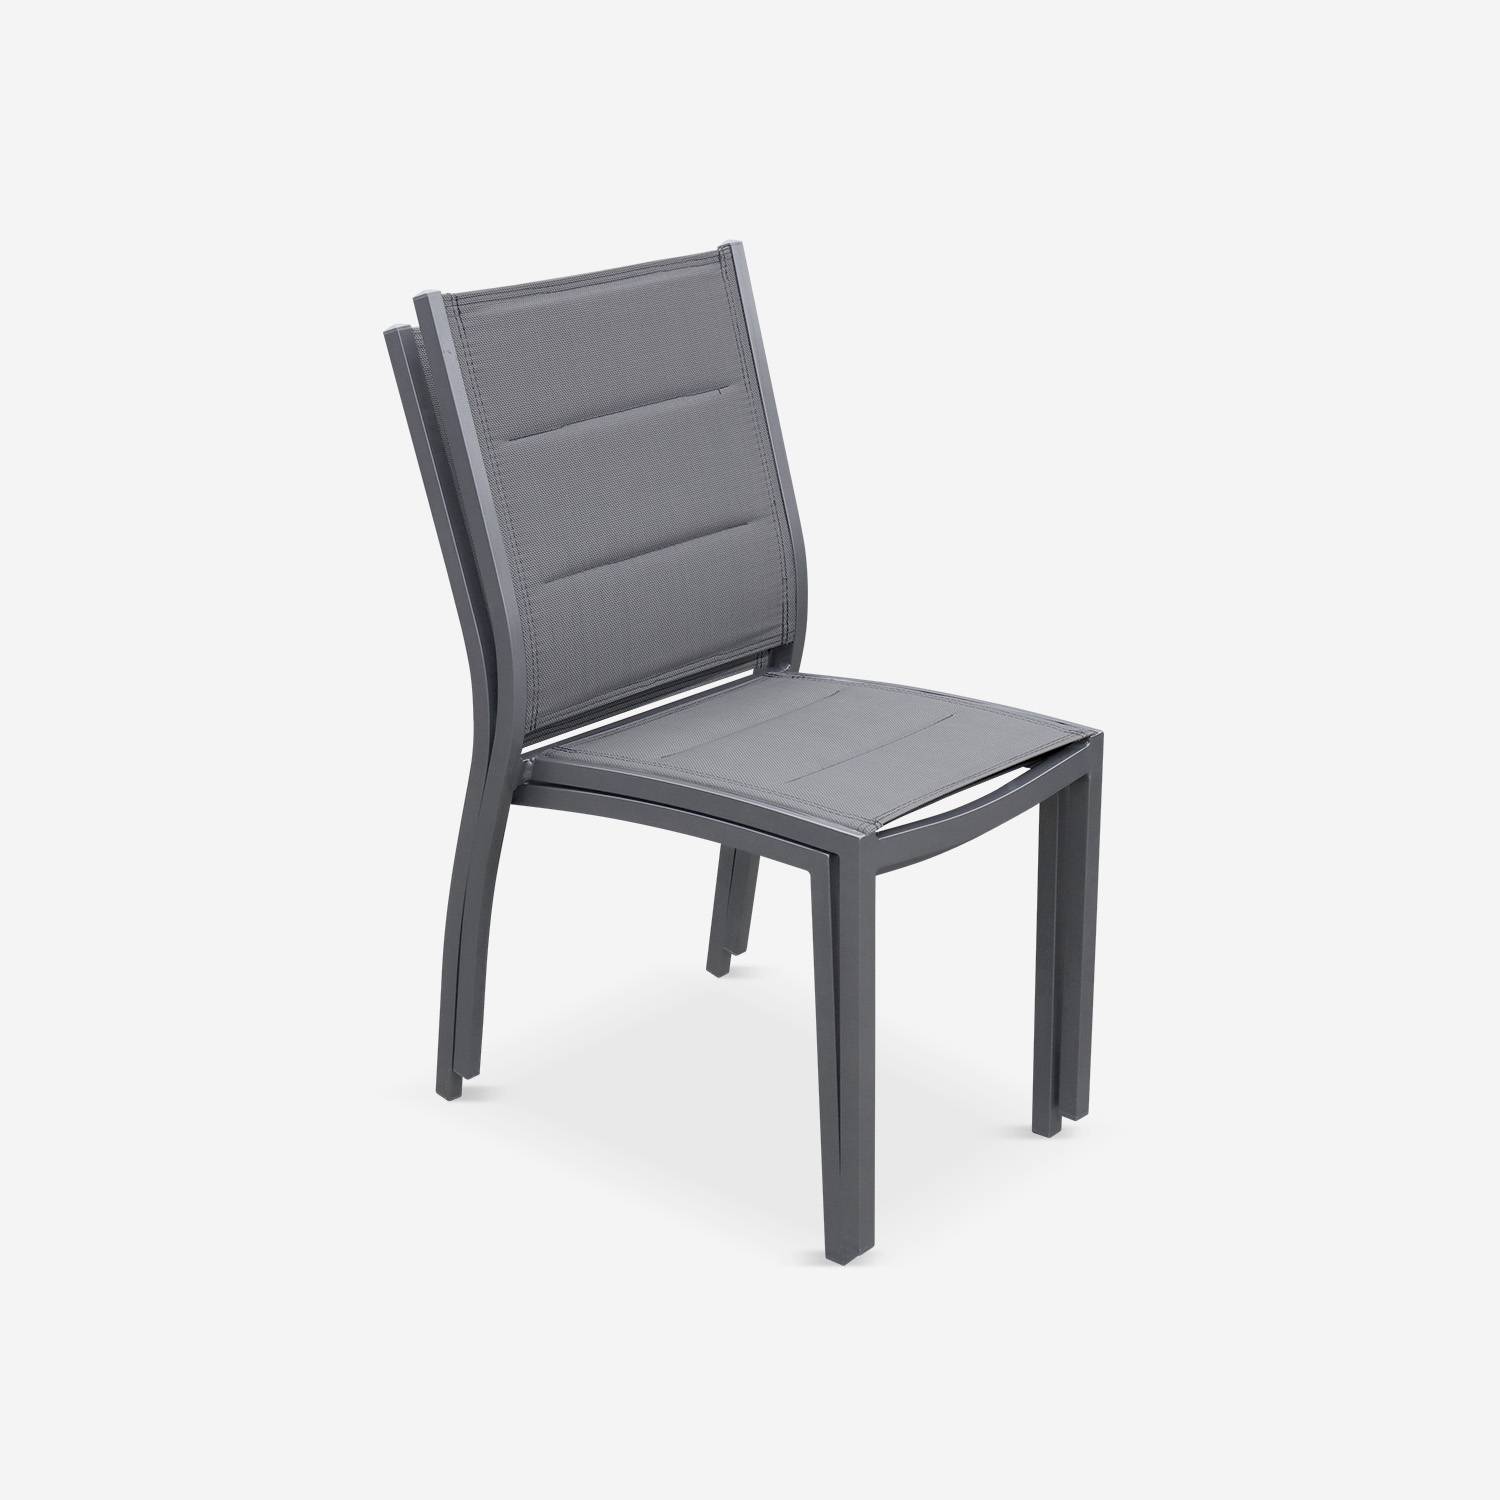 Lot de 2 chaises - Chicago / Odenton Anthracite - En aluminium anthracite et textilène gris taupe, empilables Photo3